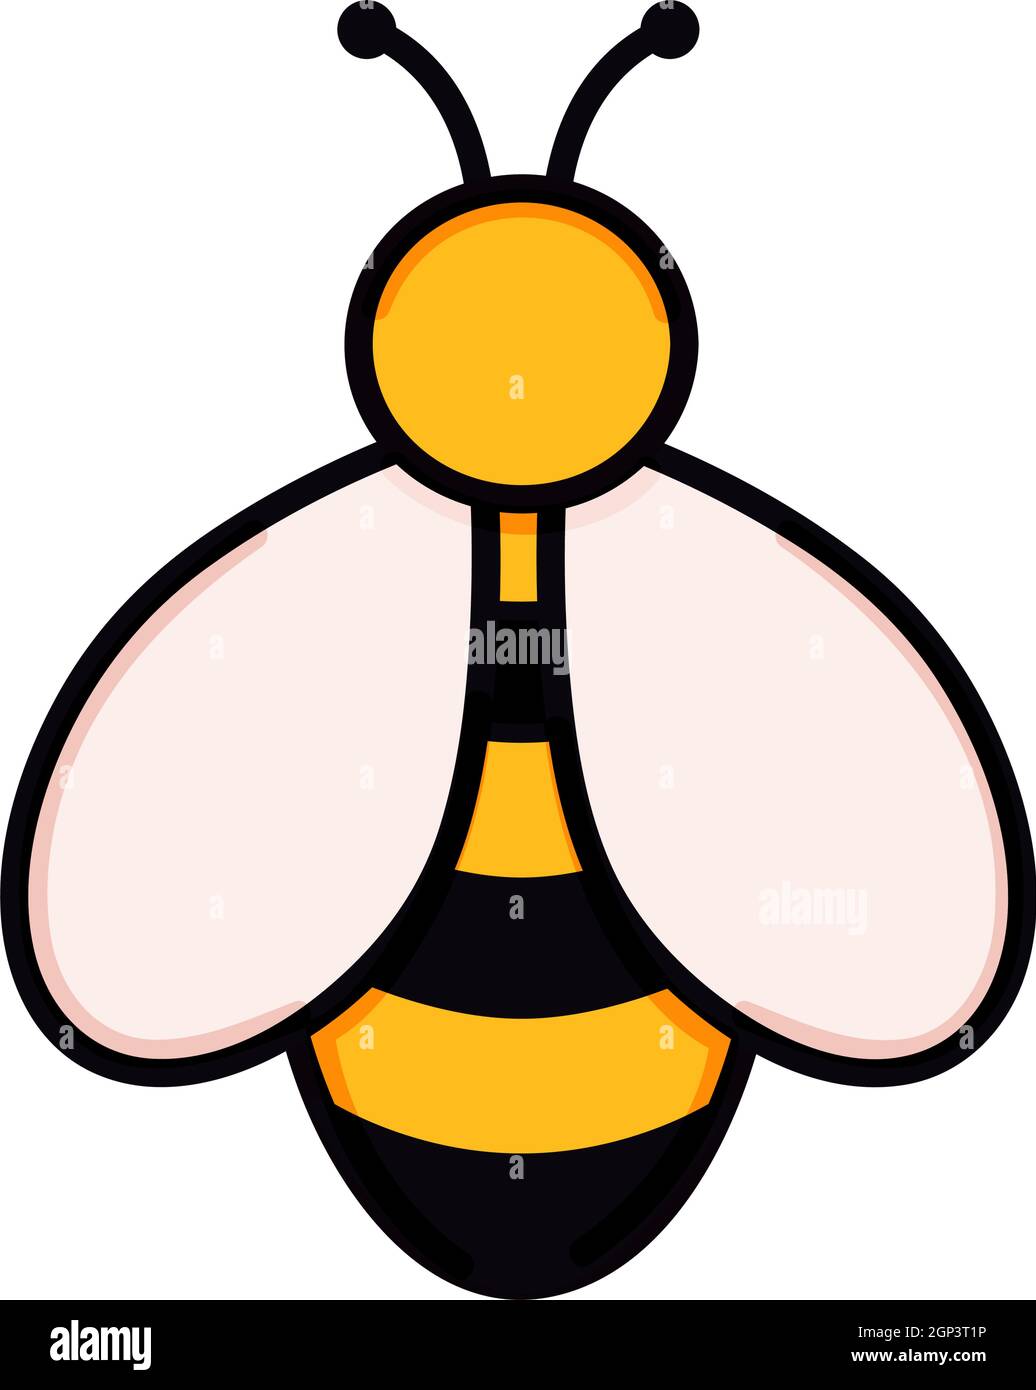 Illustration de vecteur abeille mignon en forme de doodle. Dessin coloré pour enfants pour le design d'icône et de logo dans les couleurs jaune et noir isolé sur fond blanc Illustration de Vecteur